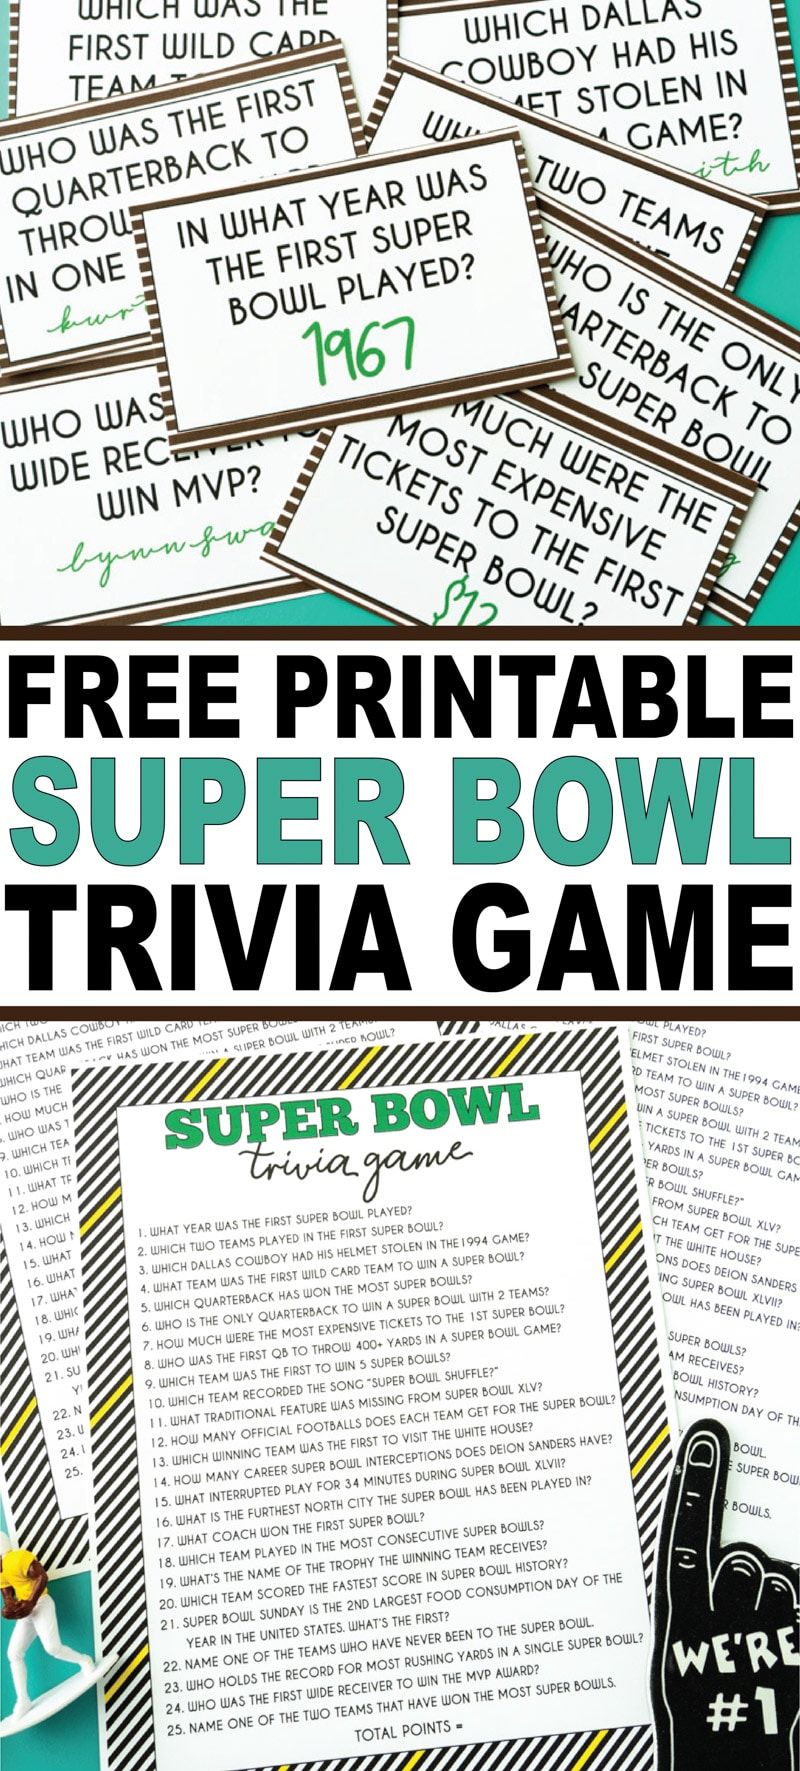 Jautra Super Bowl sīkumu spēle ar gan izdrukājamu spēles versiju, gan izdrukājamām kartītēm, kas jāuzdod pirms un pēc spēles! Viena no labākajām Super Bowl viesību spēlēm jebkad!